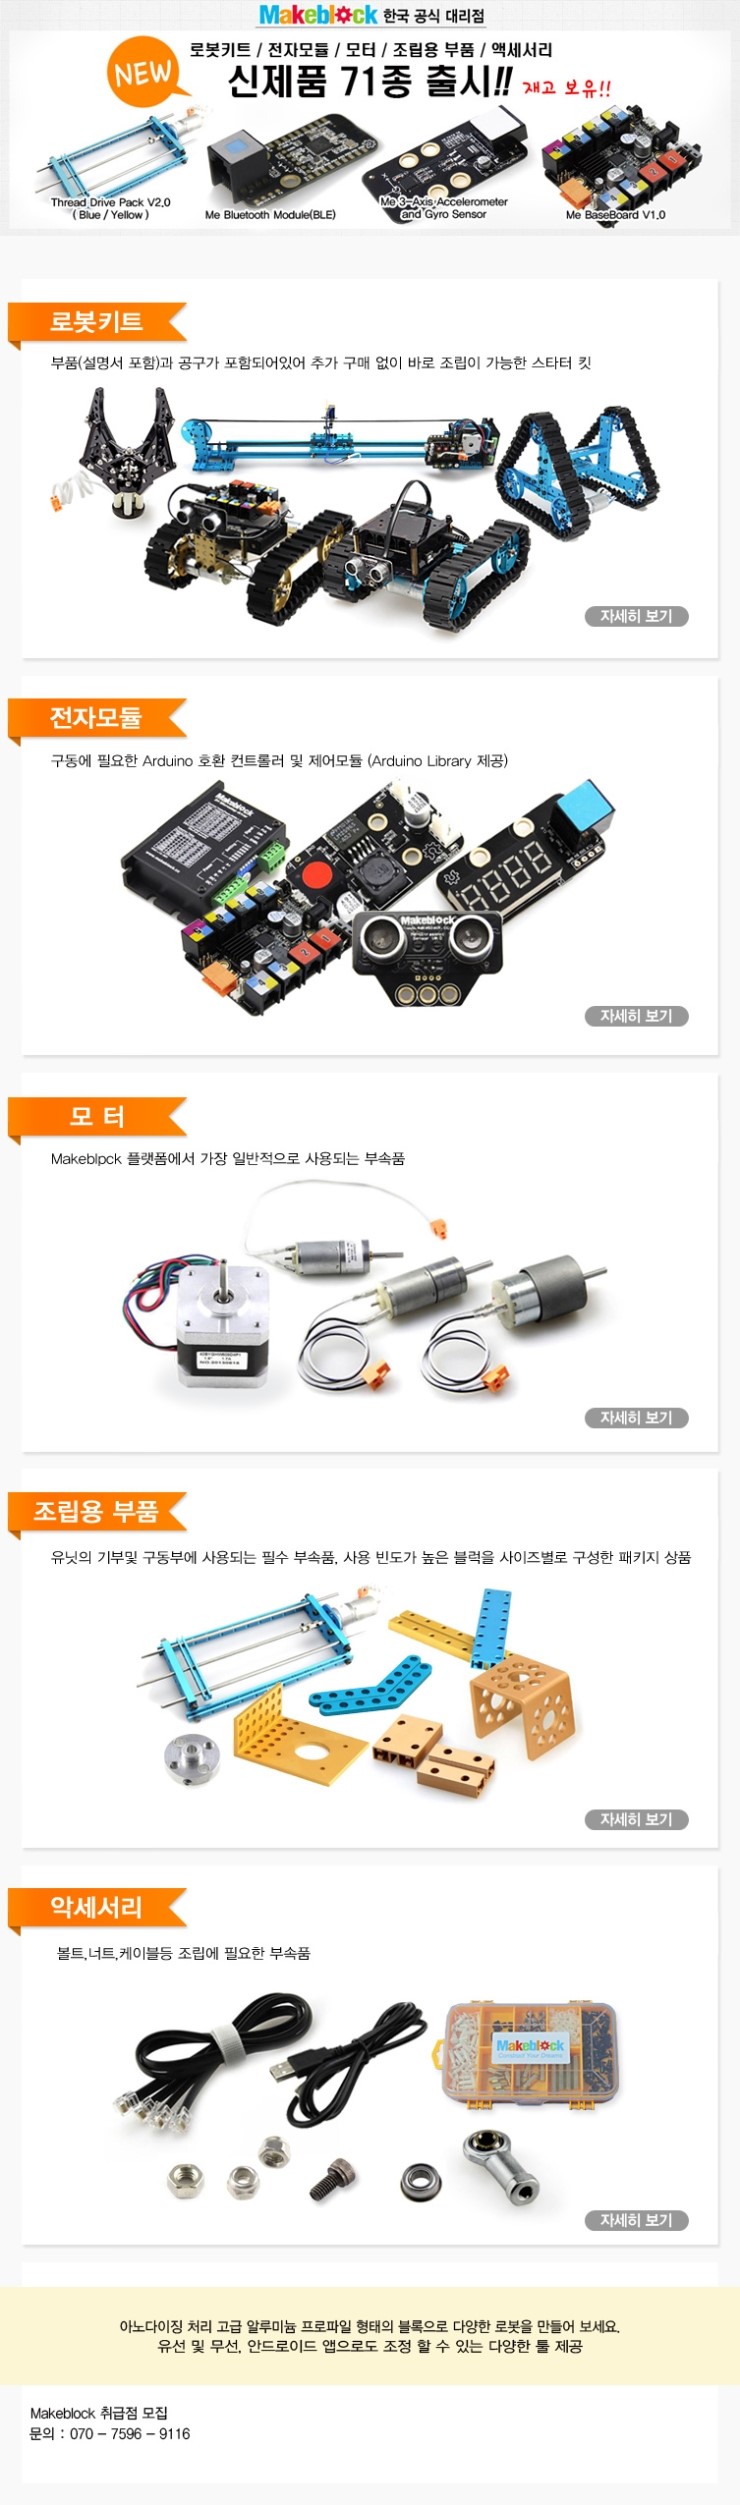 아두이노(Arduino)로 만드는 블록 Makeblock 신제품 출시 !!!